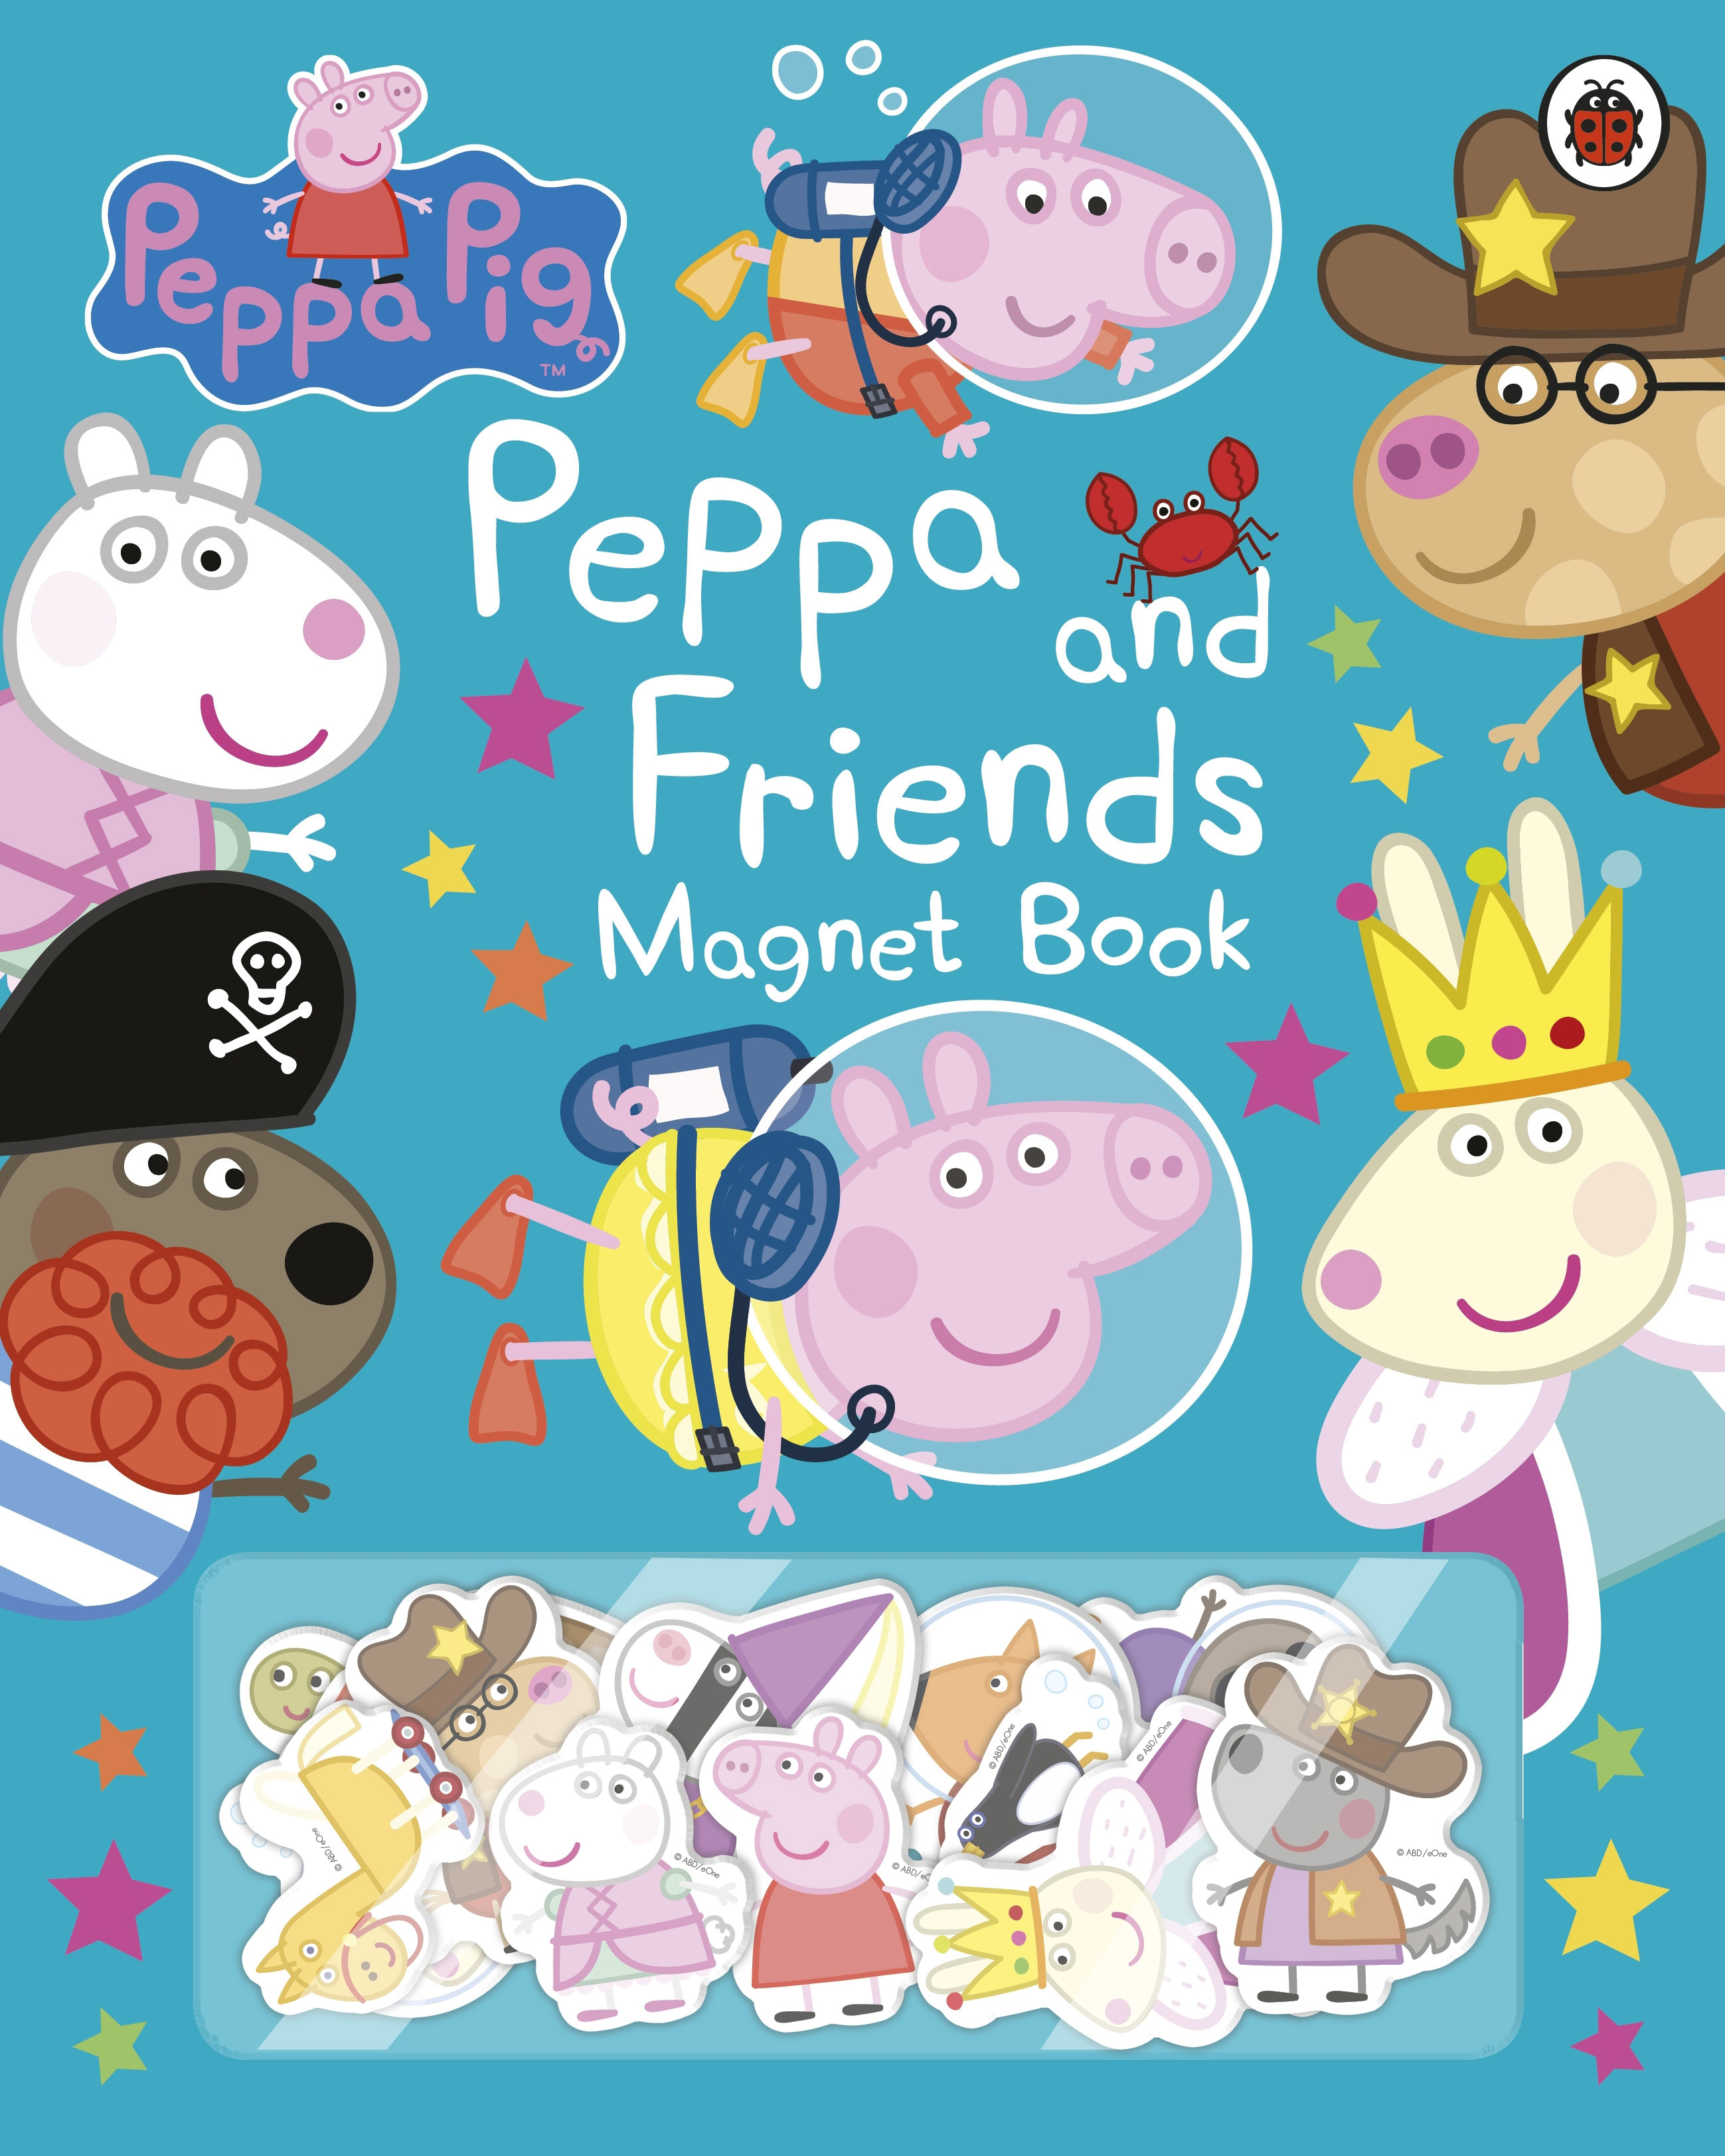 Peppa Pig Peppa and Friends Magnet Book ( Board Book )